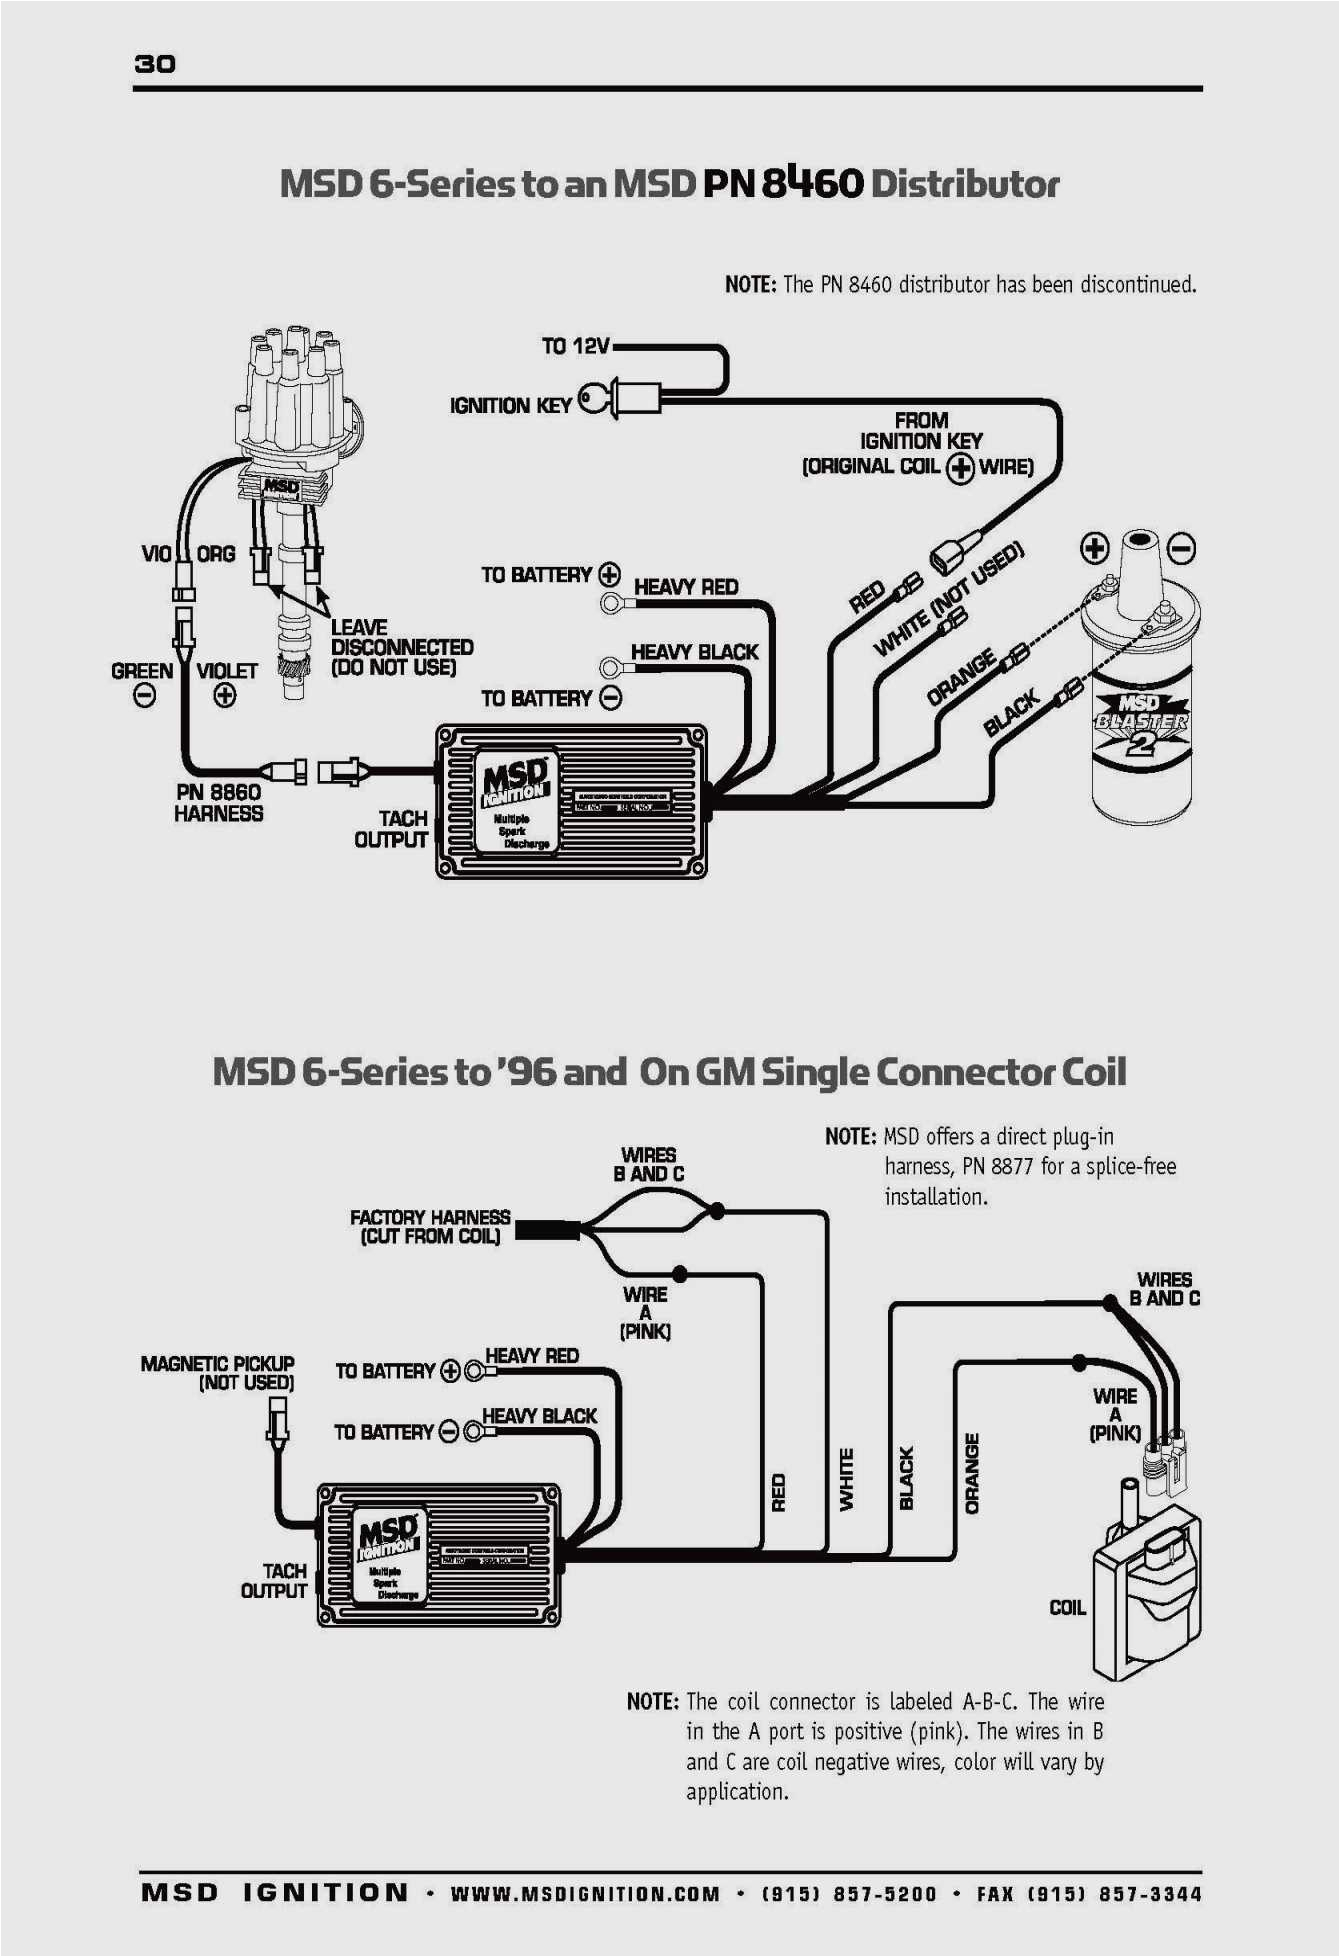 msd wiring schematic wiring diagram world msd 6m wire schematic